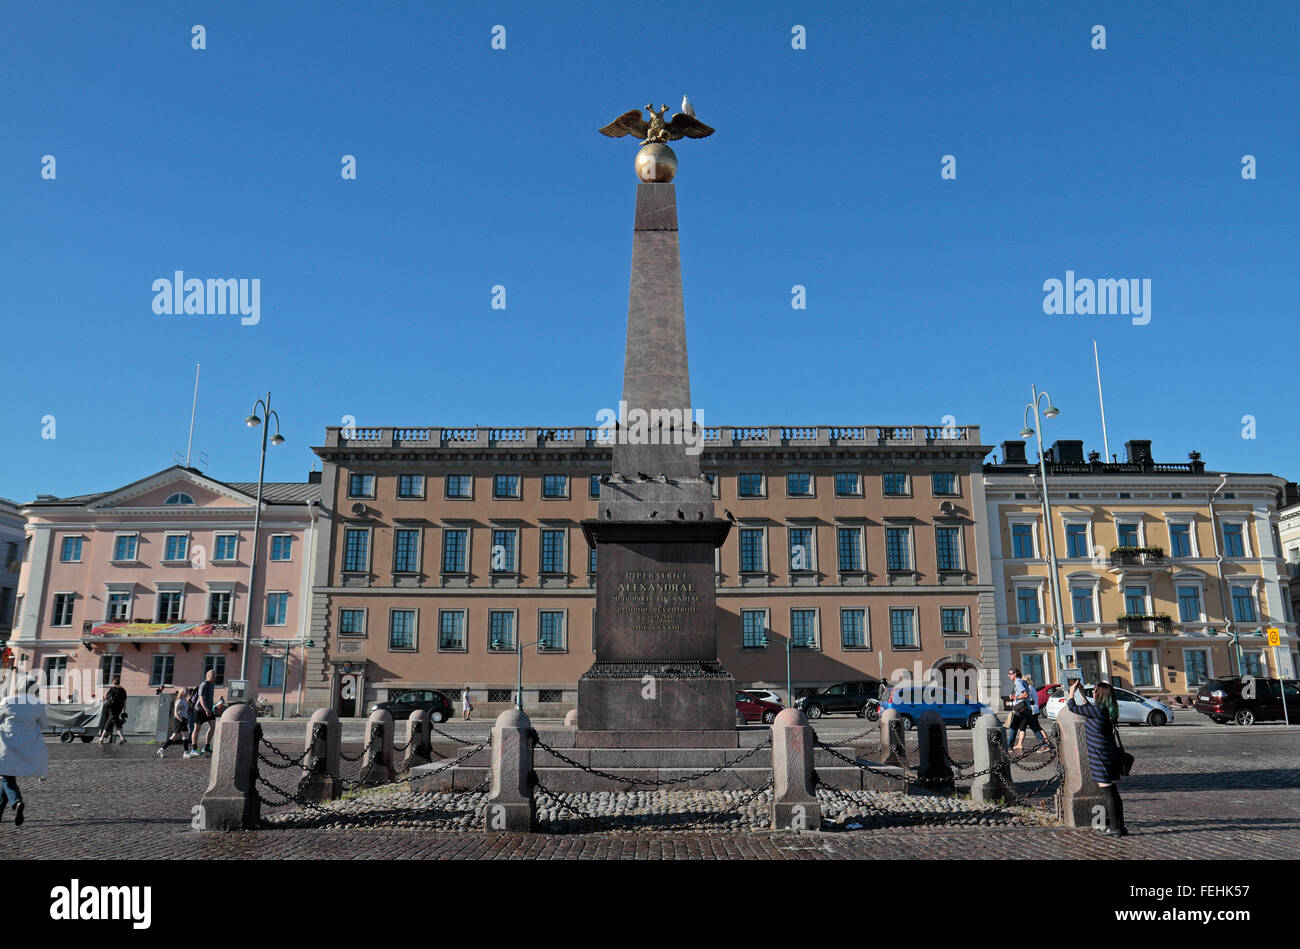 Columna memorial dedicado a la emperatriz rusa Alexandra Feodorovna con la Embajada Sueca detrás, Helsinki, Finlandia. Foto de stock